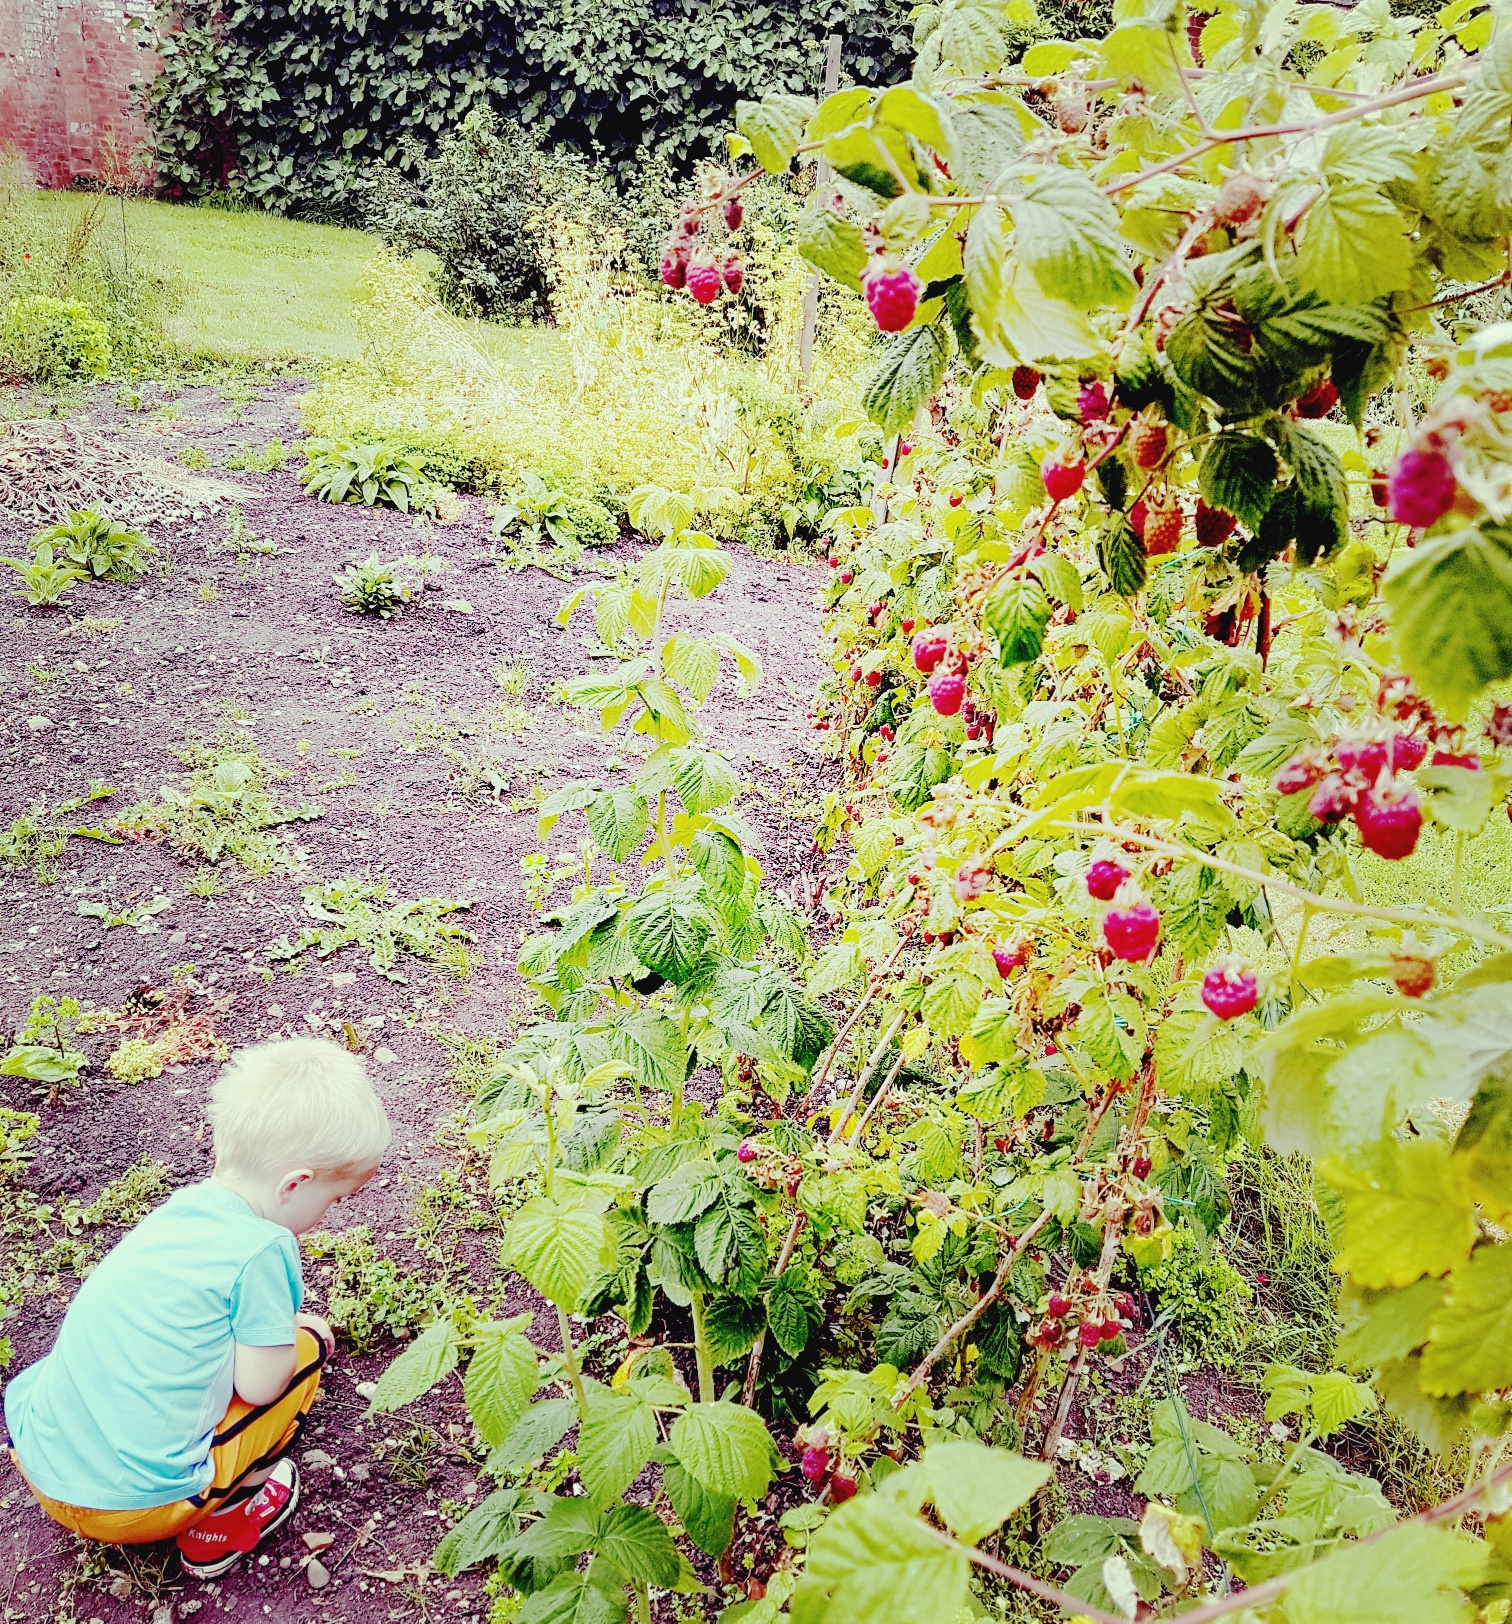 raspberries growing in the garden